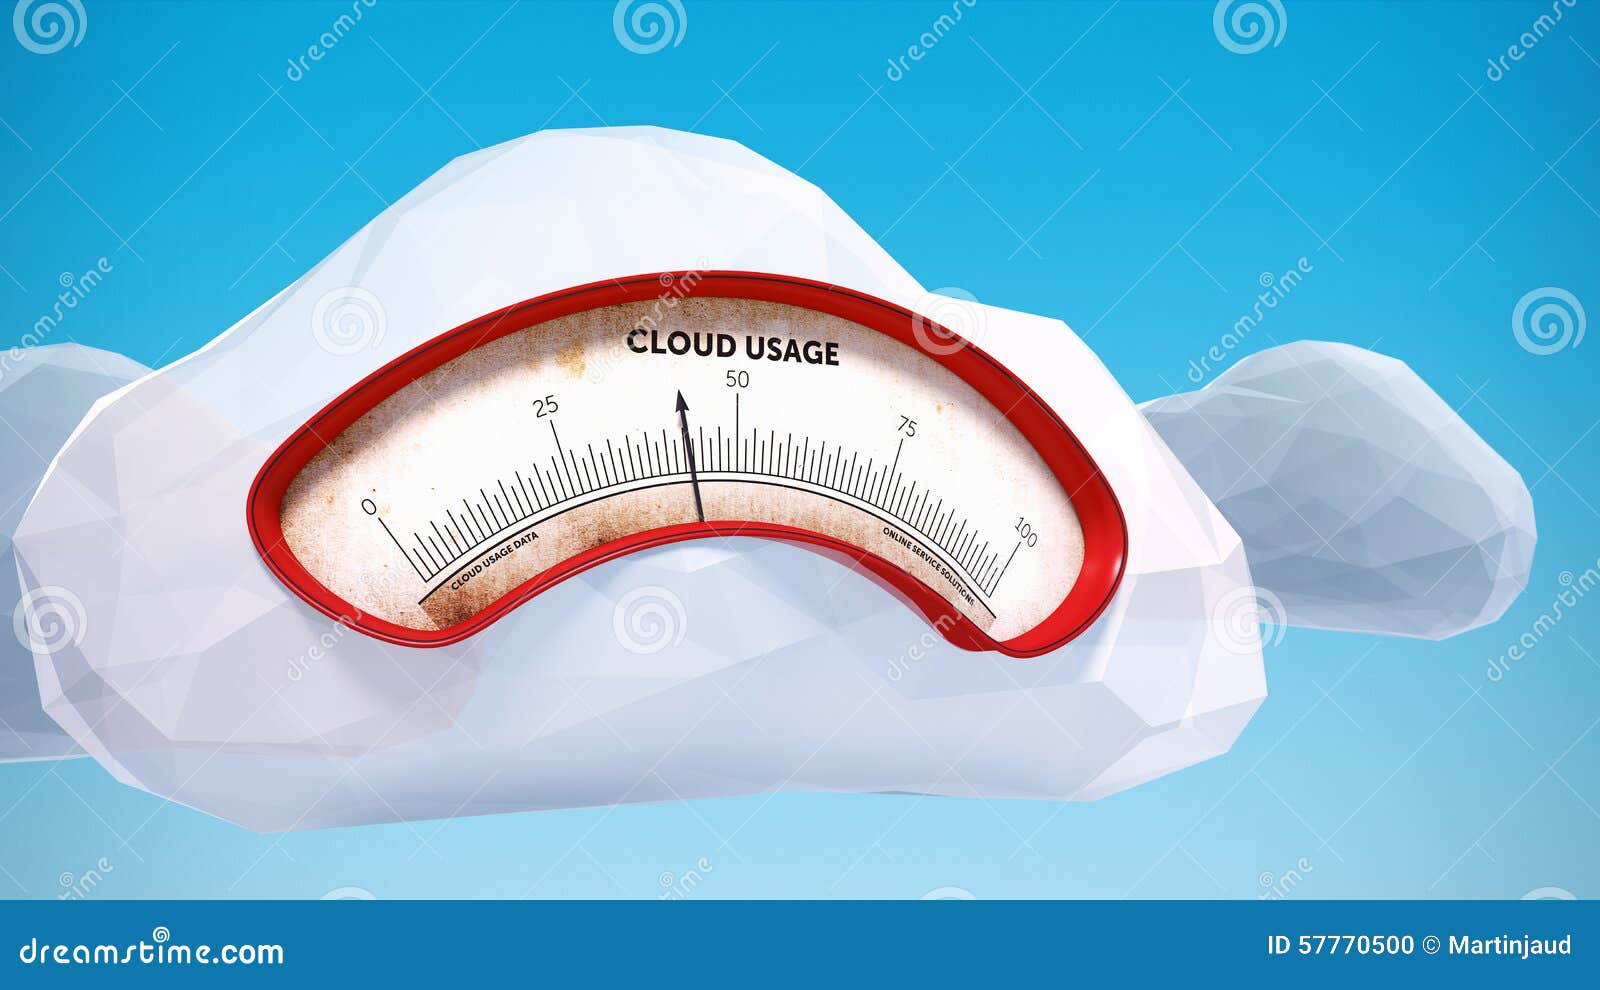 cloud computing usage data meter